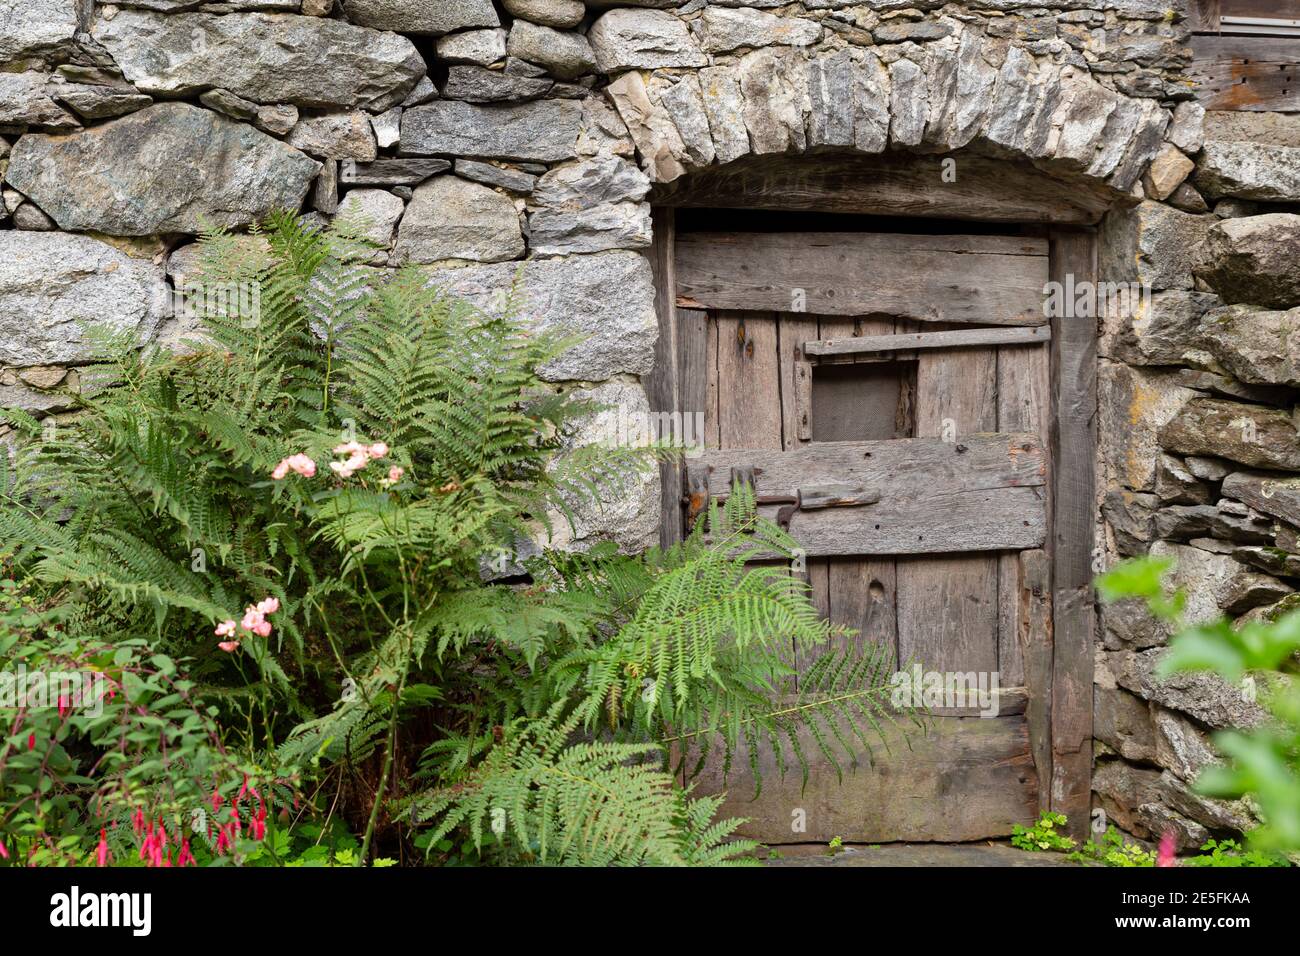 Vista frontal de una antigua casa de piedra con una enorme pequeña puerta de madera y helecho Foto de stock